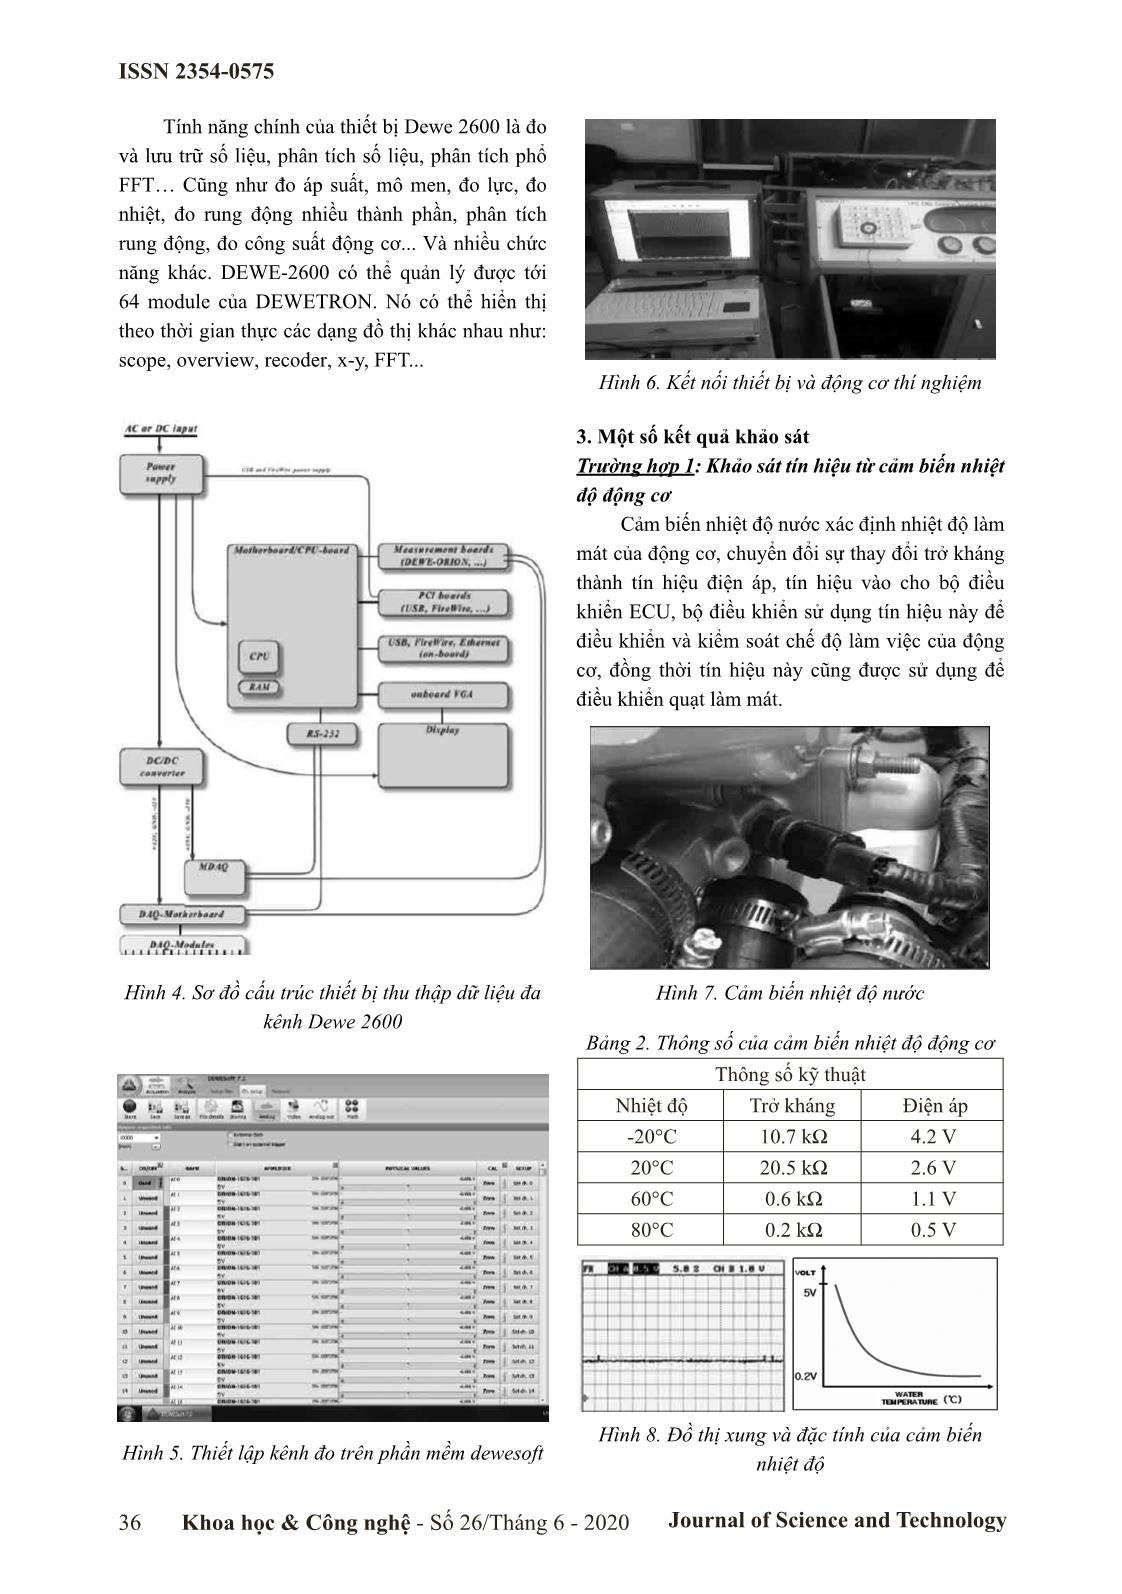 Ứng dụng thiết bị thu thập dữ liệu đa kênh DEWE 2600 khảo sát tín hiệu từ cảm biến trên động cơ đốt trong trang 3